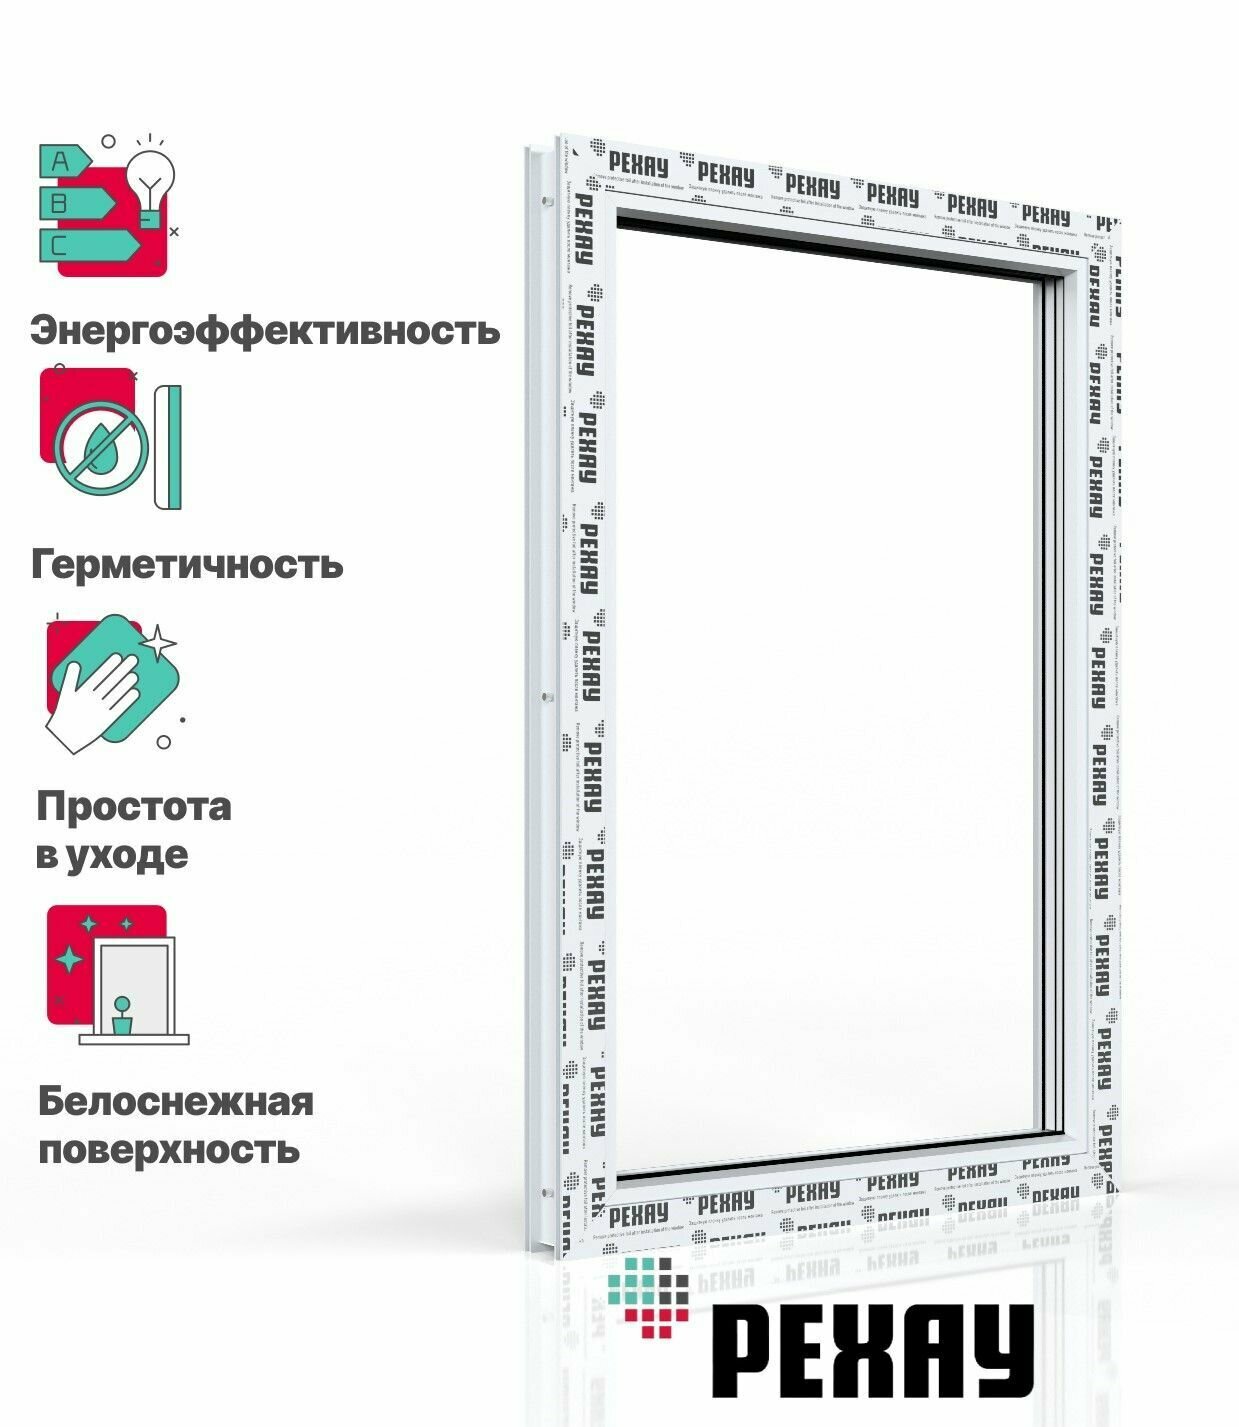 Пластиковое окно ПВХ РЕХАУ DELIGHT профиль 70 мм, 1200х600 мм (ВхШ) с учетом подставочного профиля, одностворчатое, глухое, энергосберегаюший двухкамерный стеклопакет, белое